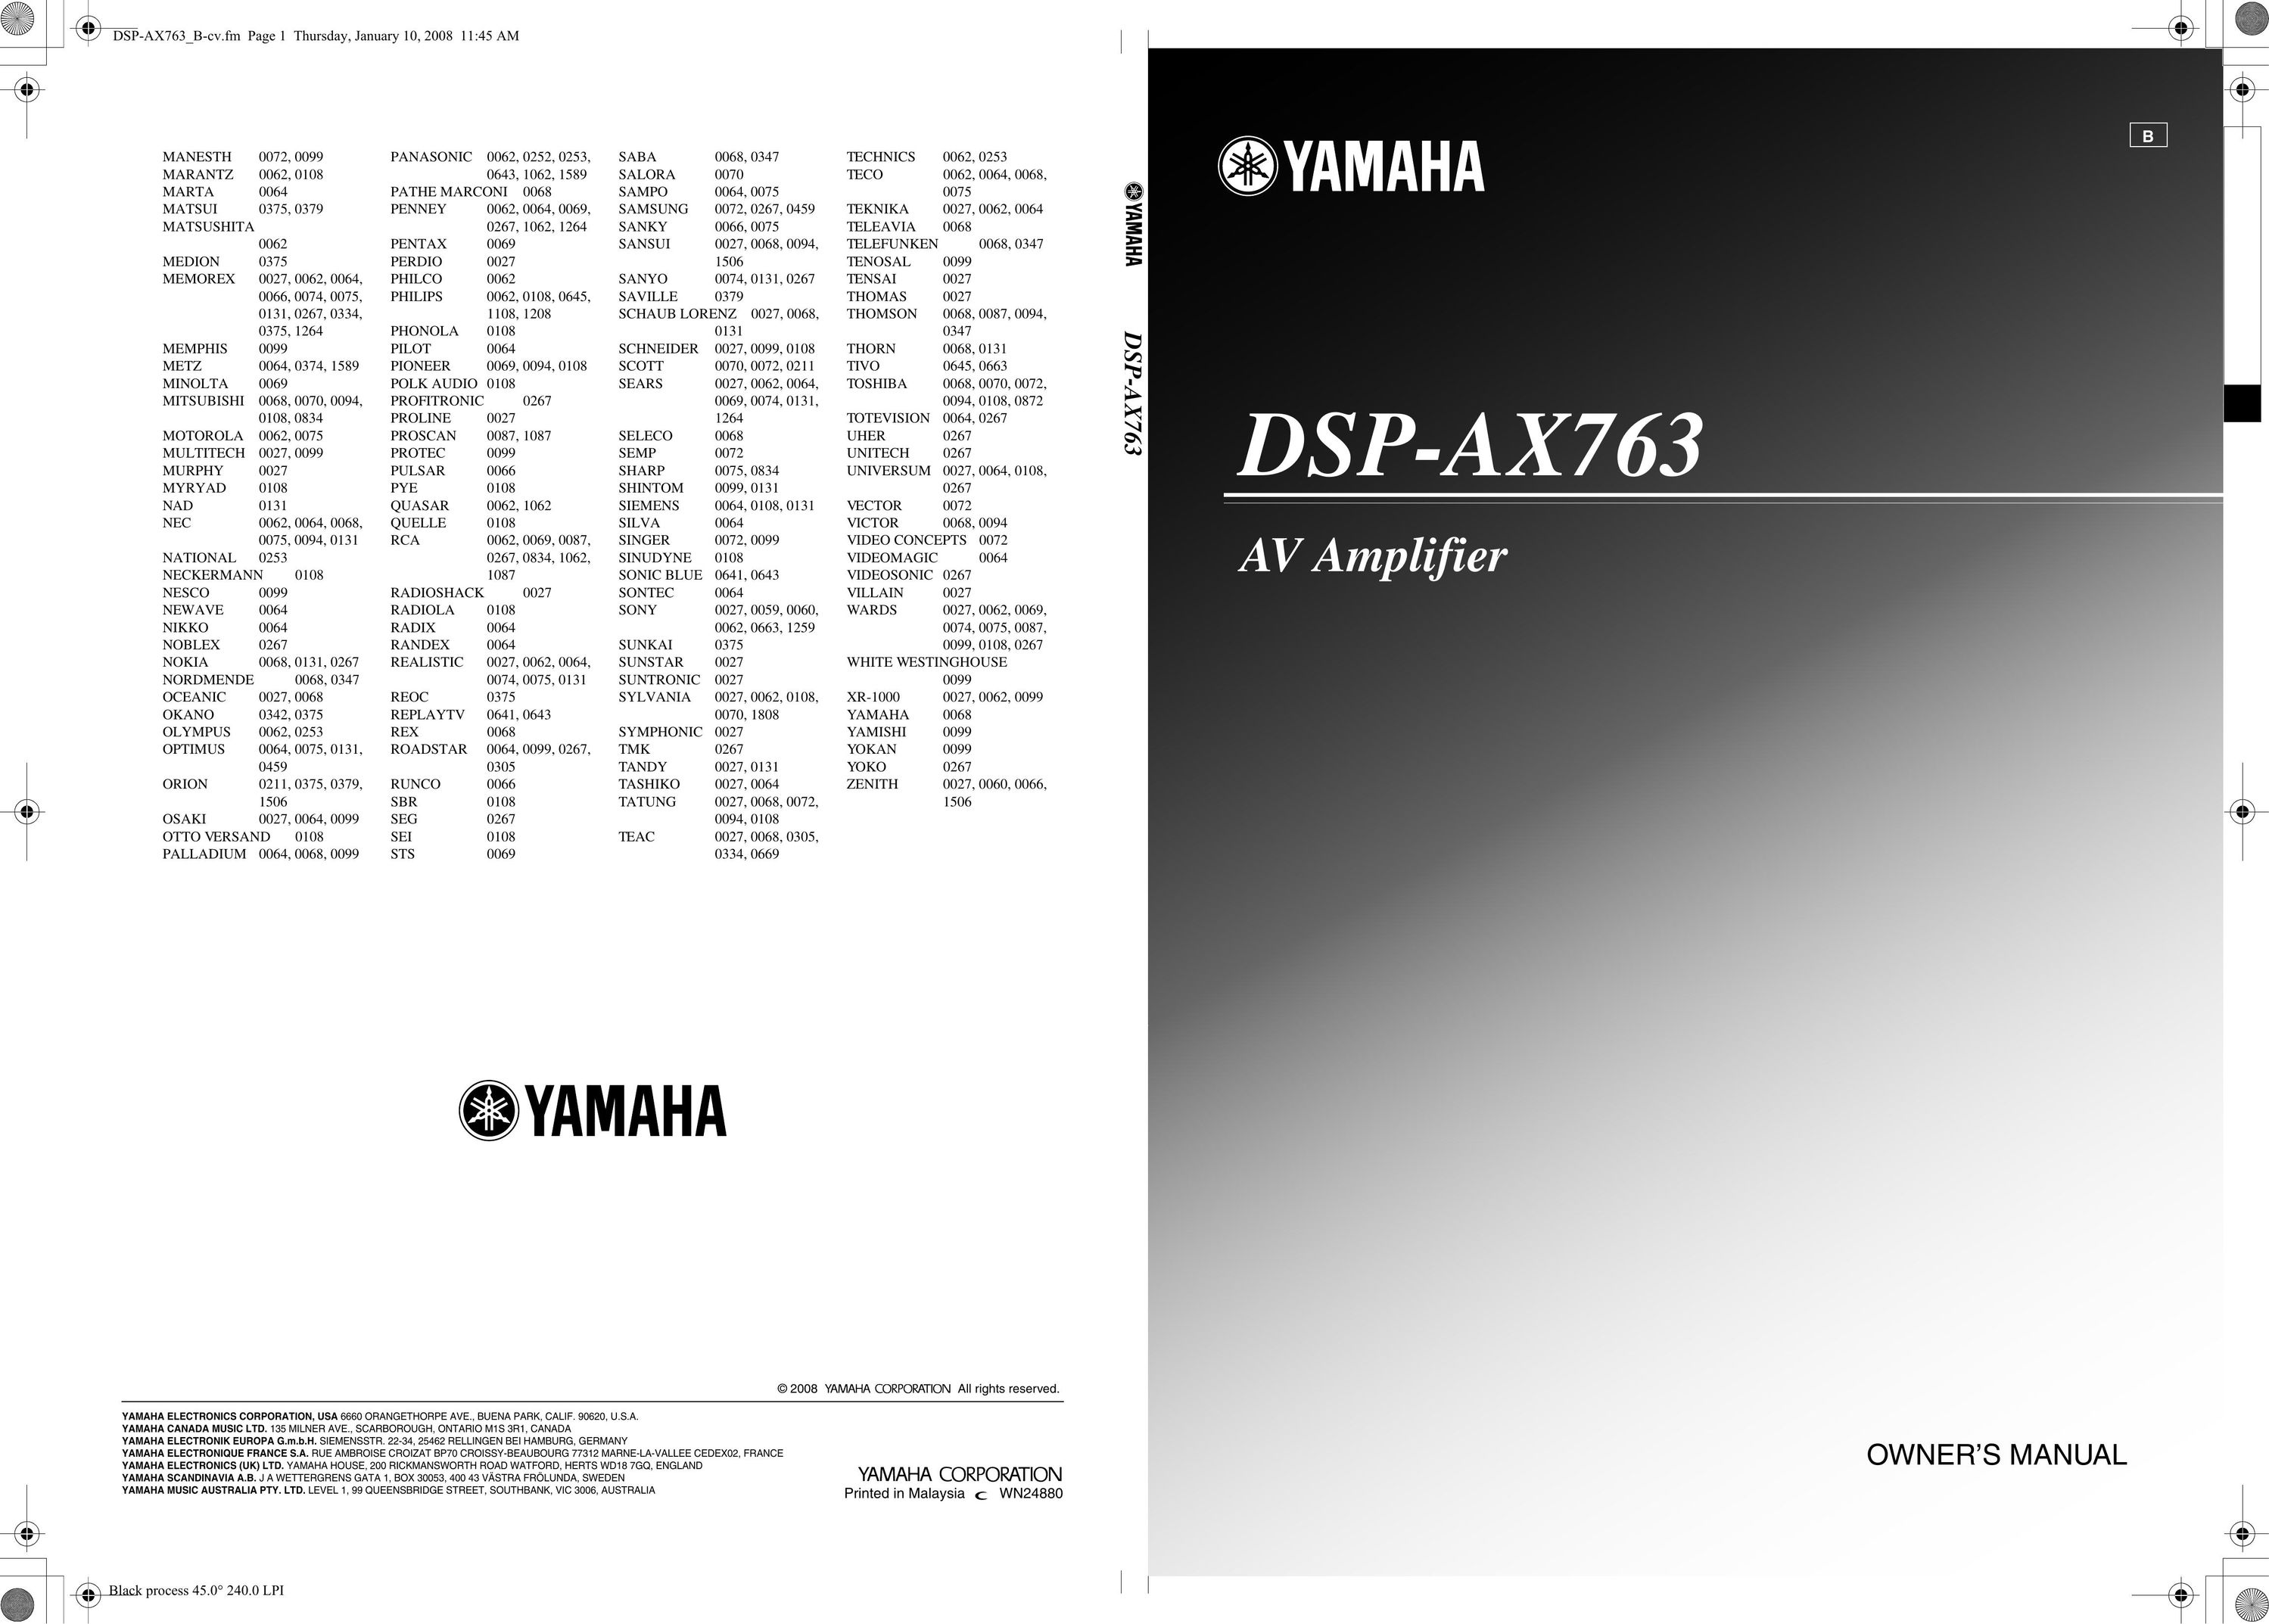 Yamaha DSP-AX763 Car Amplifier User Manual